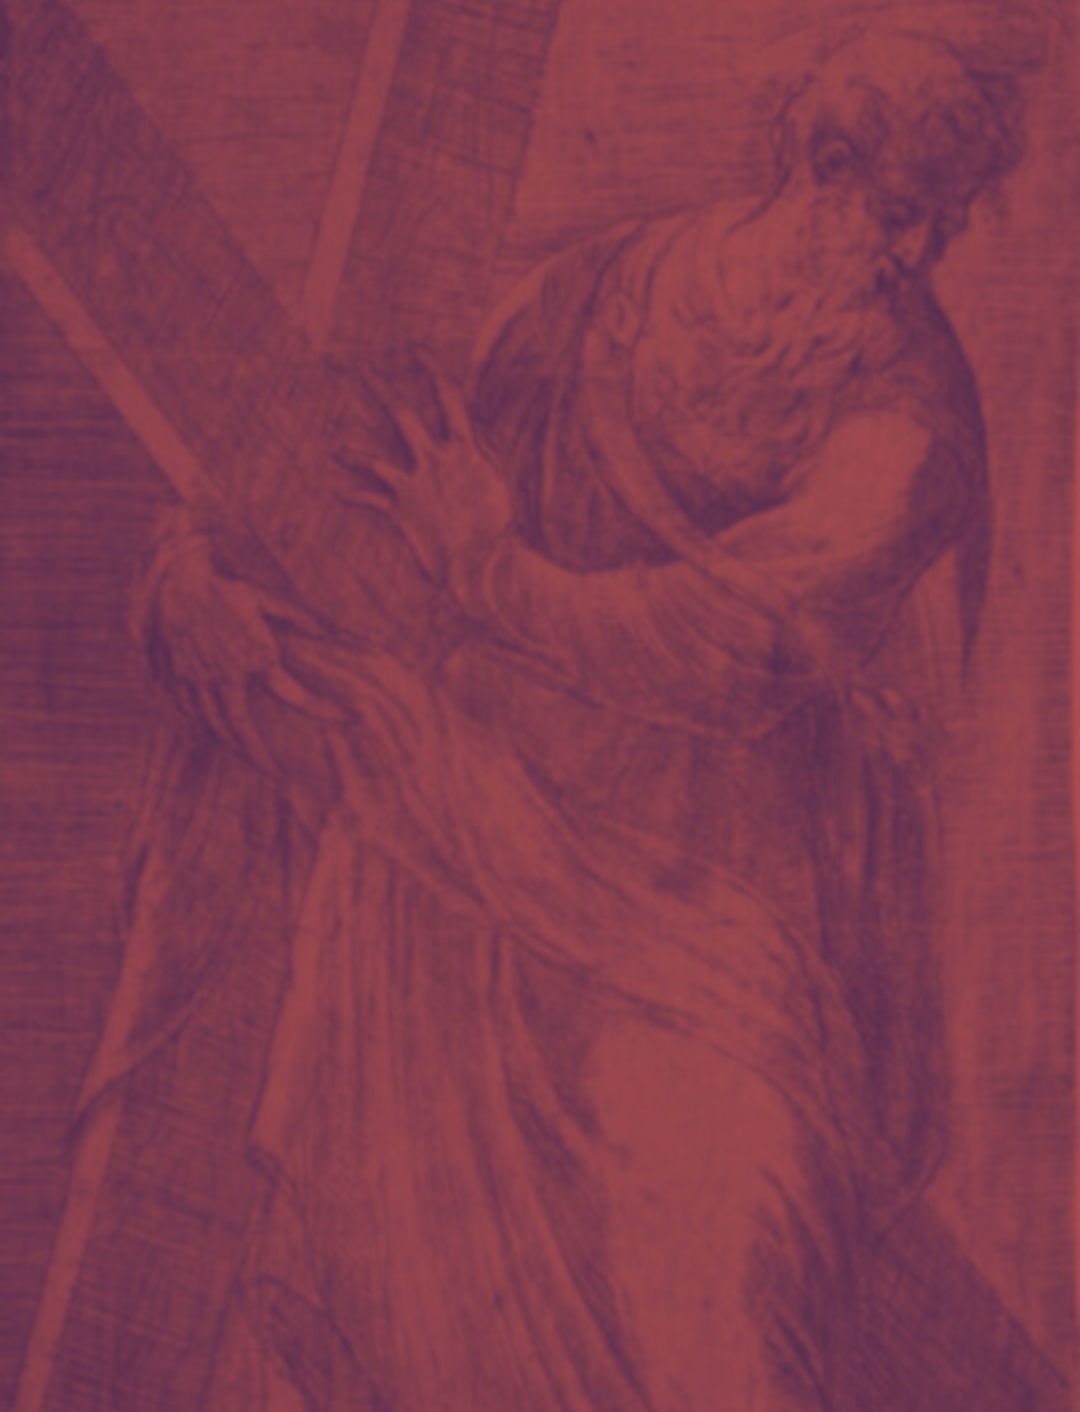 Predstavljamo velikane – Andrija Medulić (1510.-1563.)